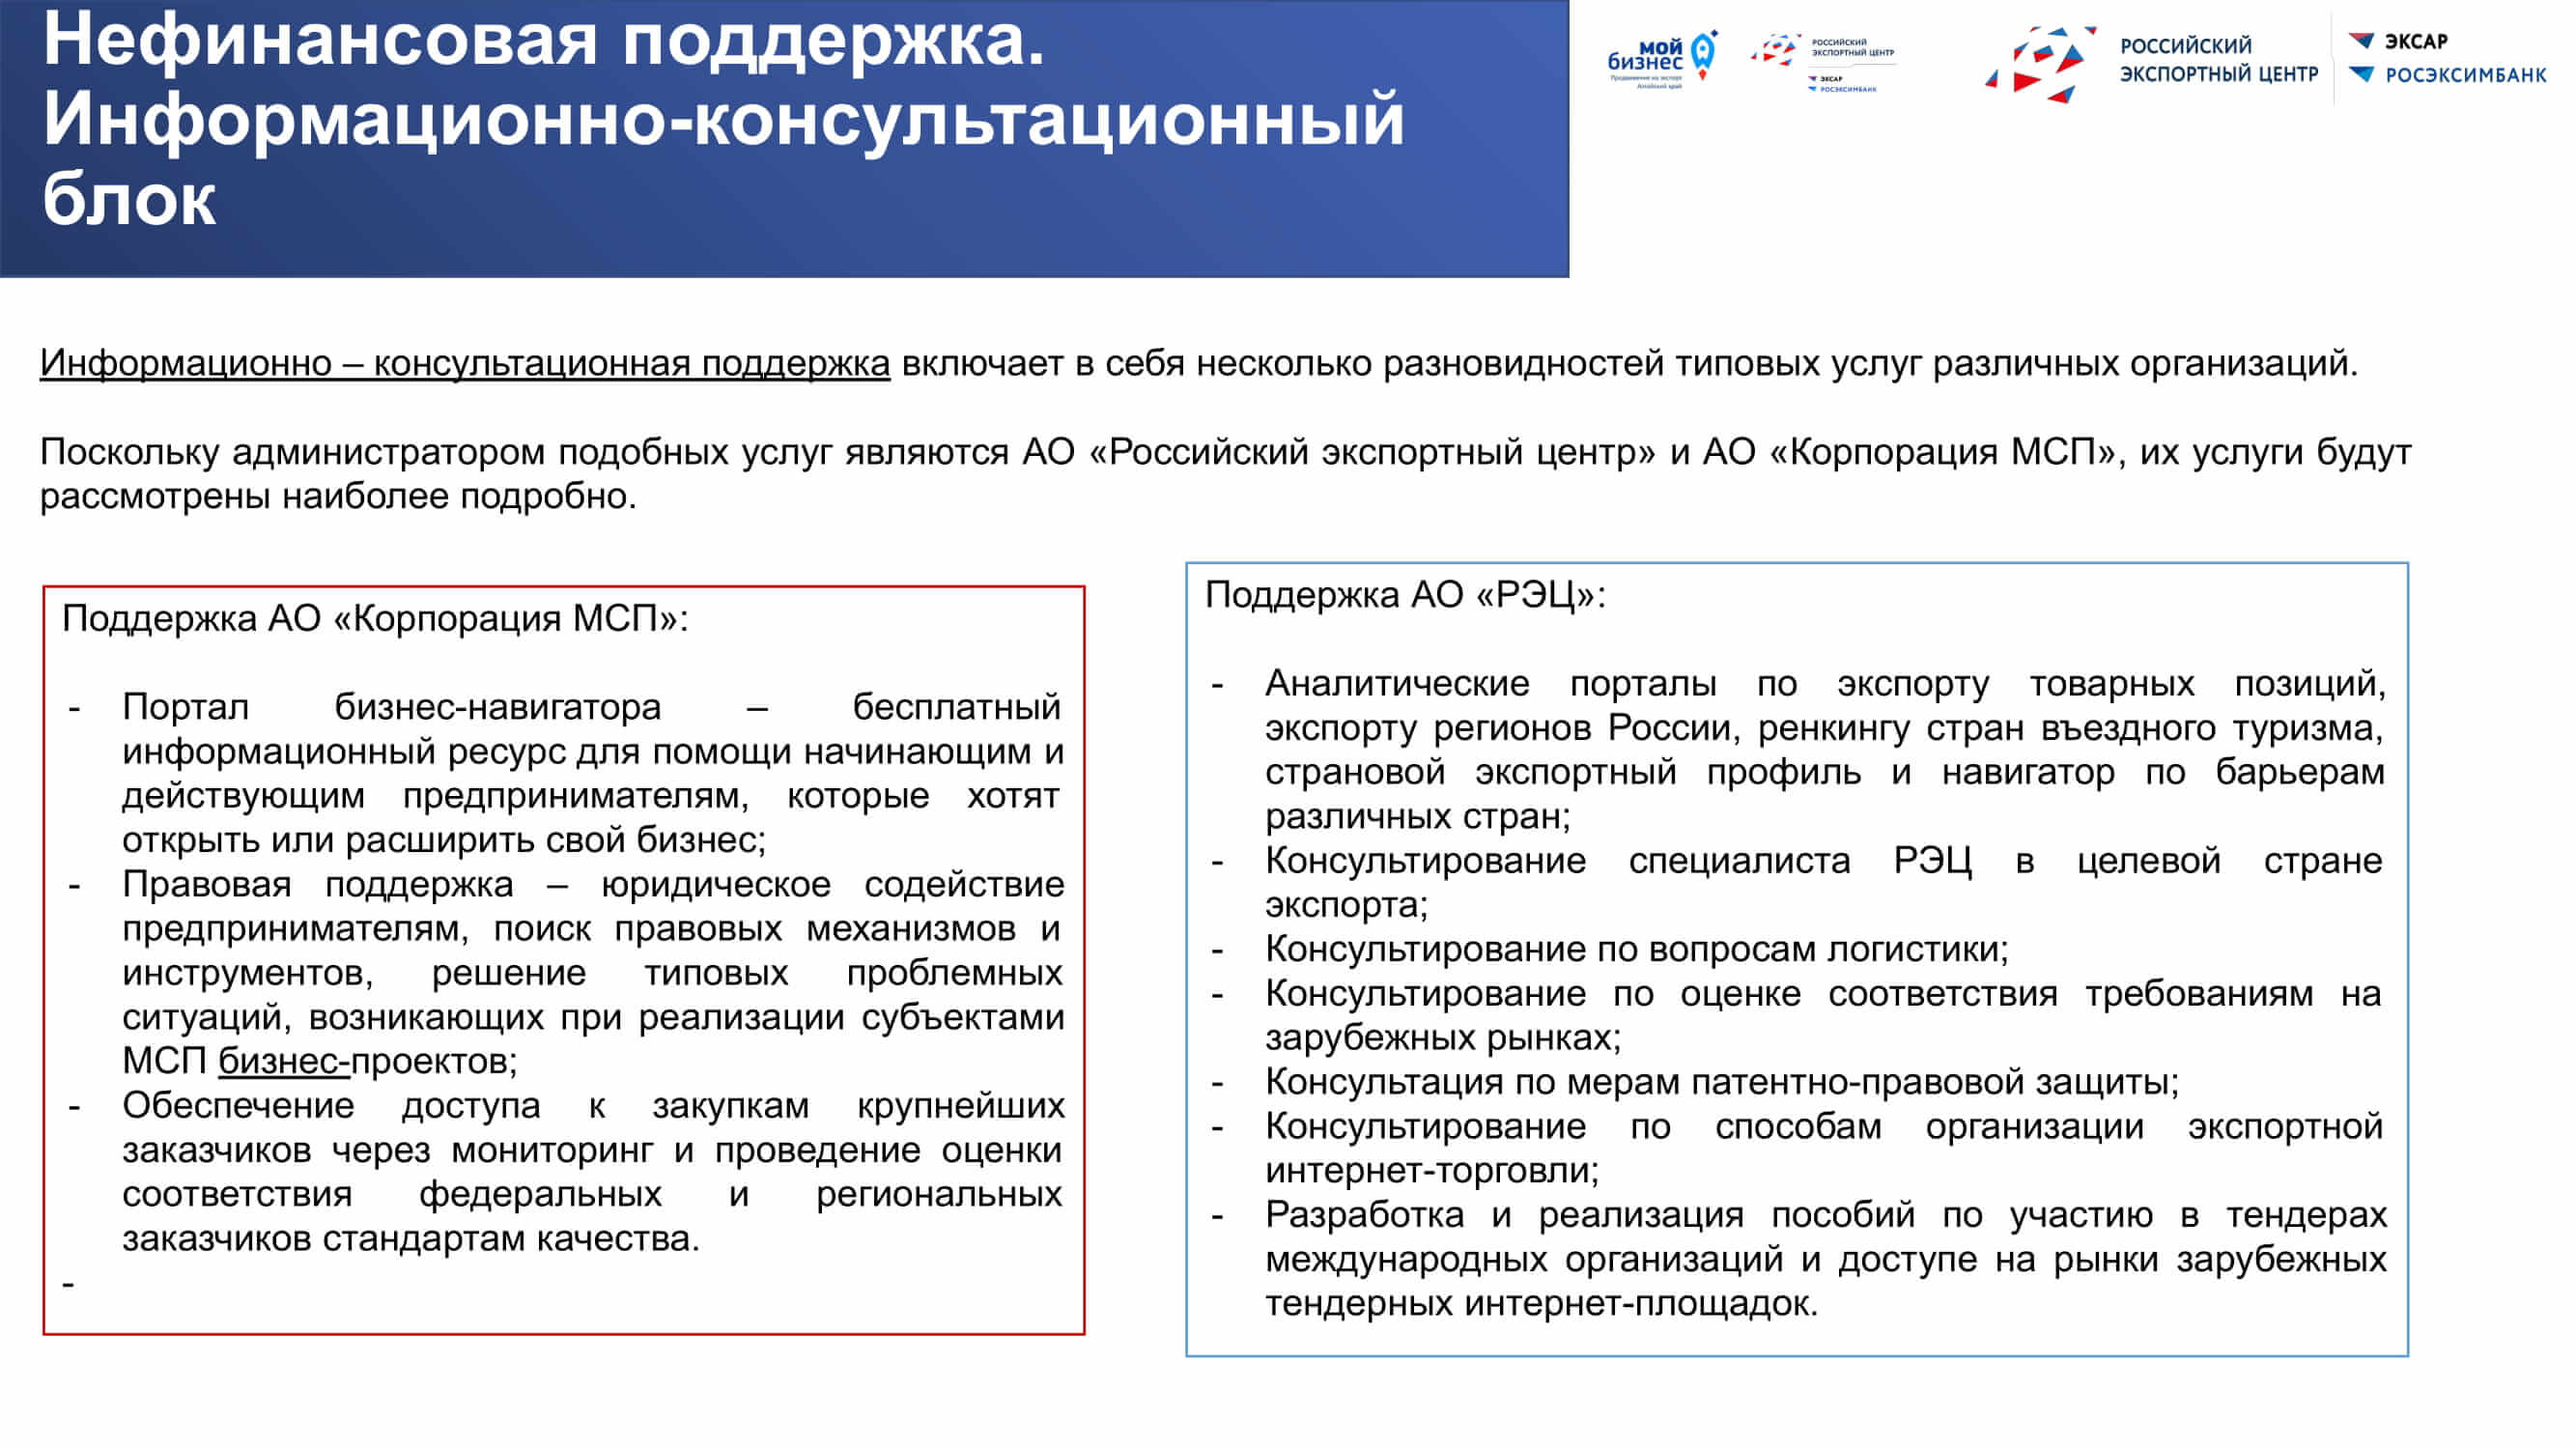 Prezentatsiya-po-vidam-podderzhki-eksporta.pptx_27.jpg